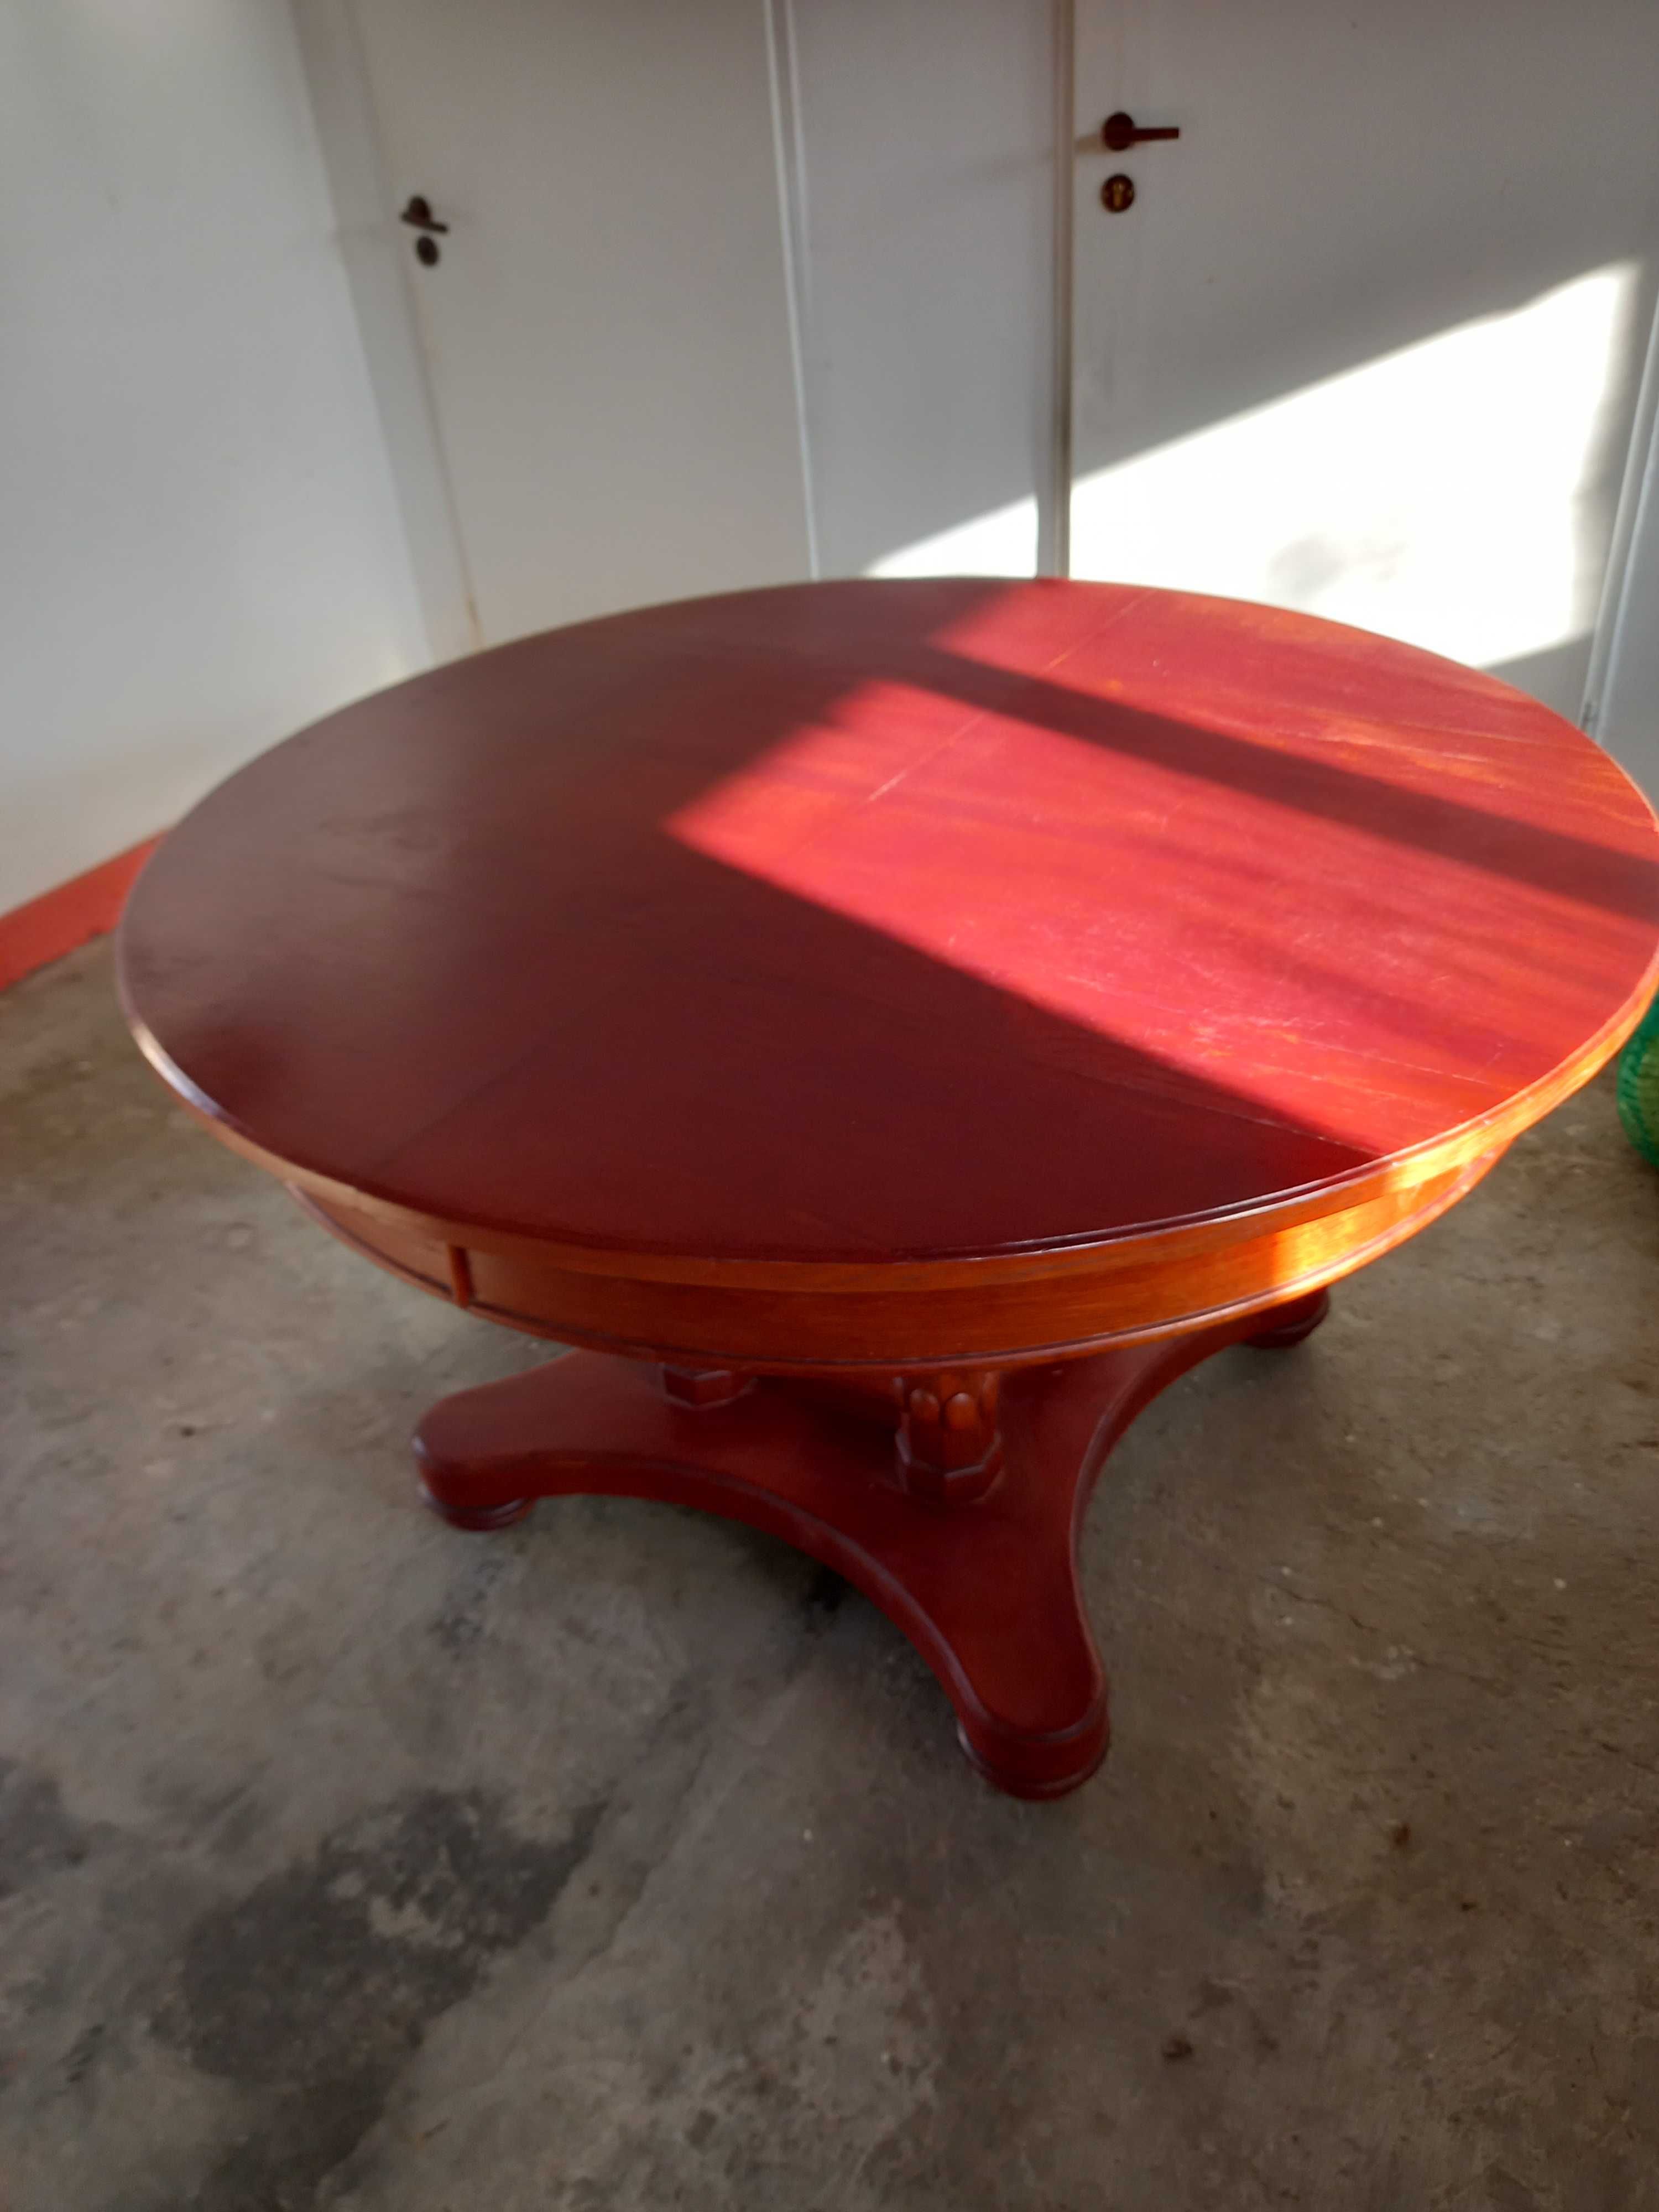 Duży okrągły stół - "okres międzywojenny" styl Biedermeier